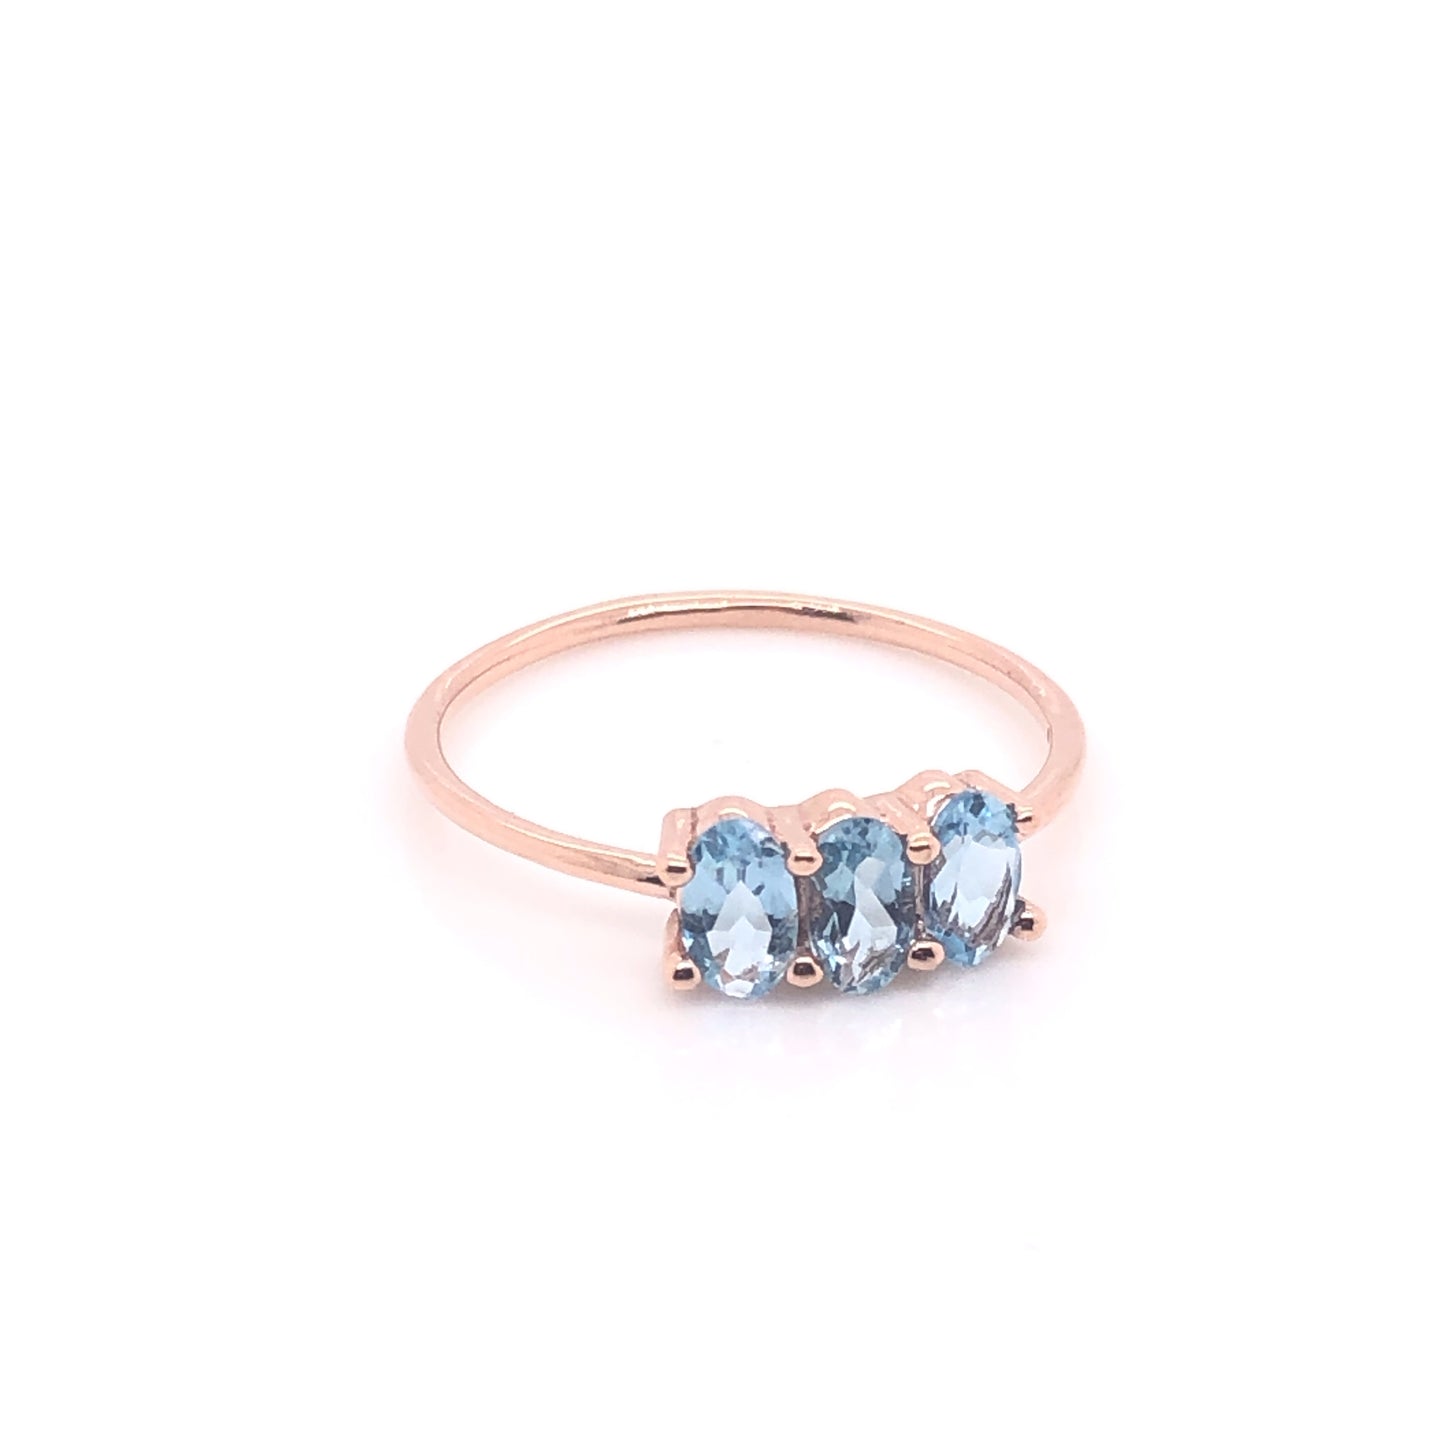 Soluna Ring with Intense Blue Aquamarine